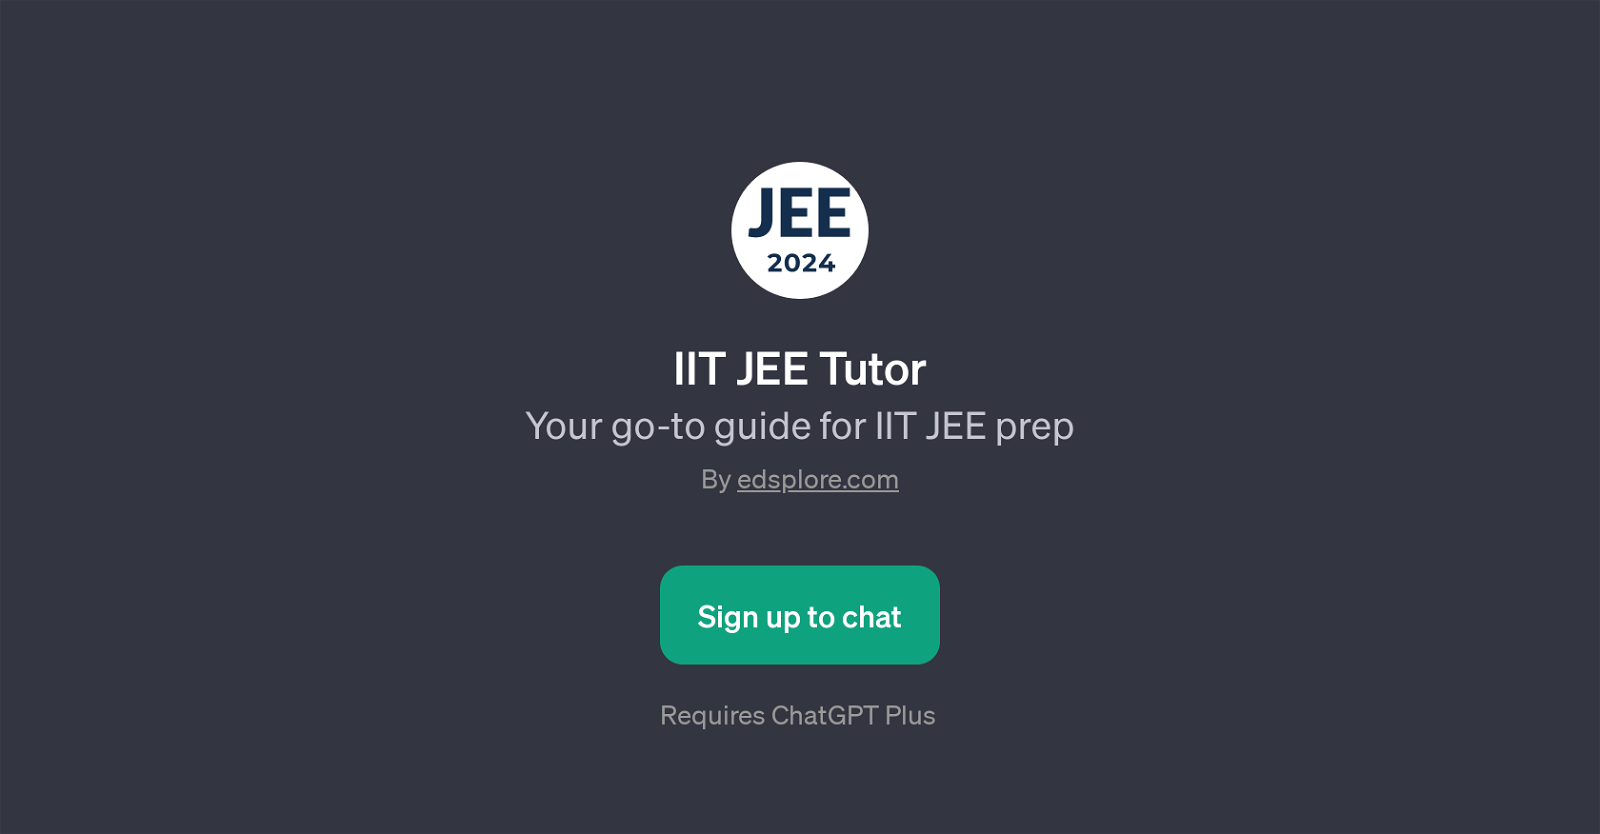 IIT JEE Tutor website